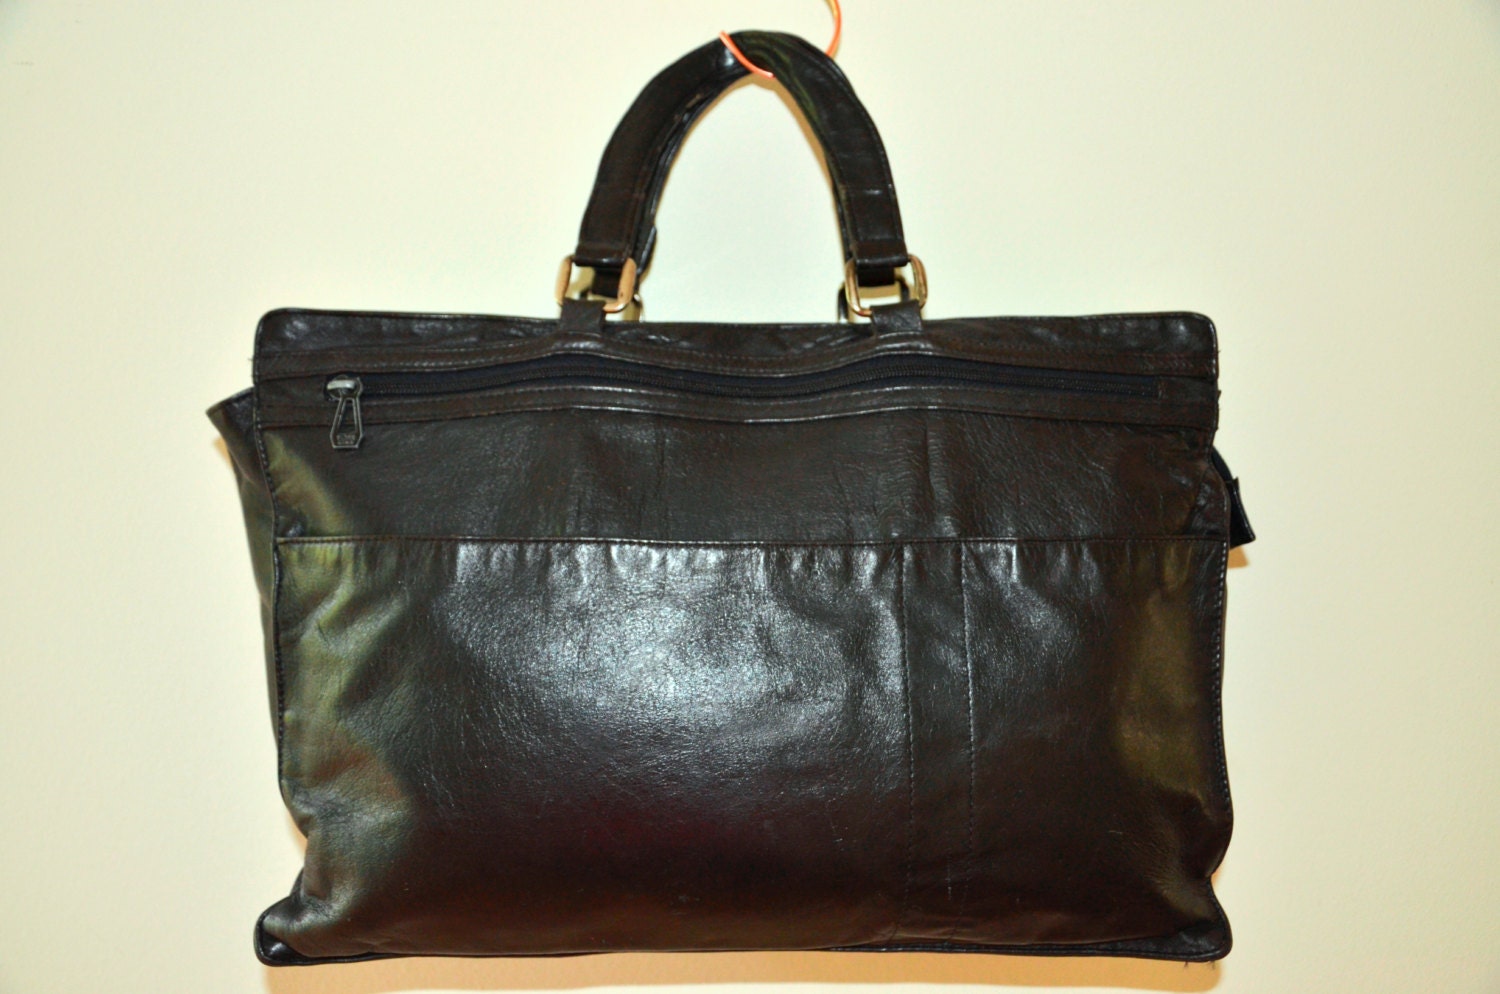 Vintage 70’s Black Leather Messenger Bag/ Handbag / Shopper Bag / Tote Bag